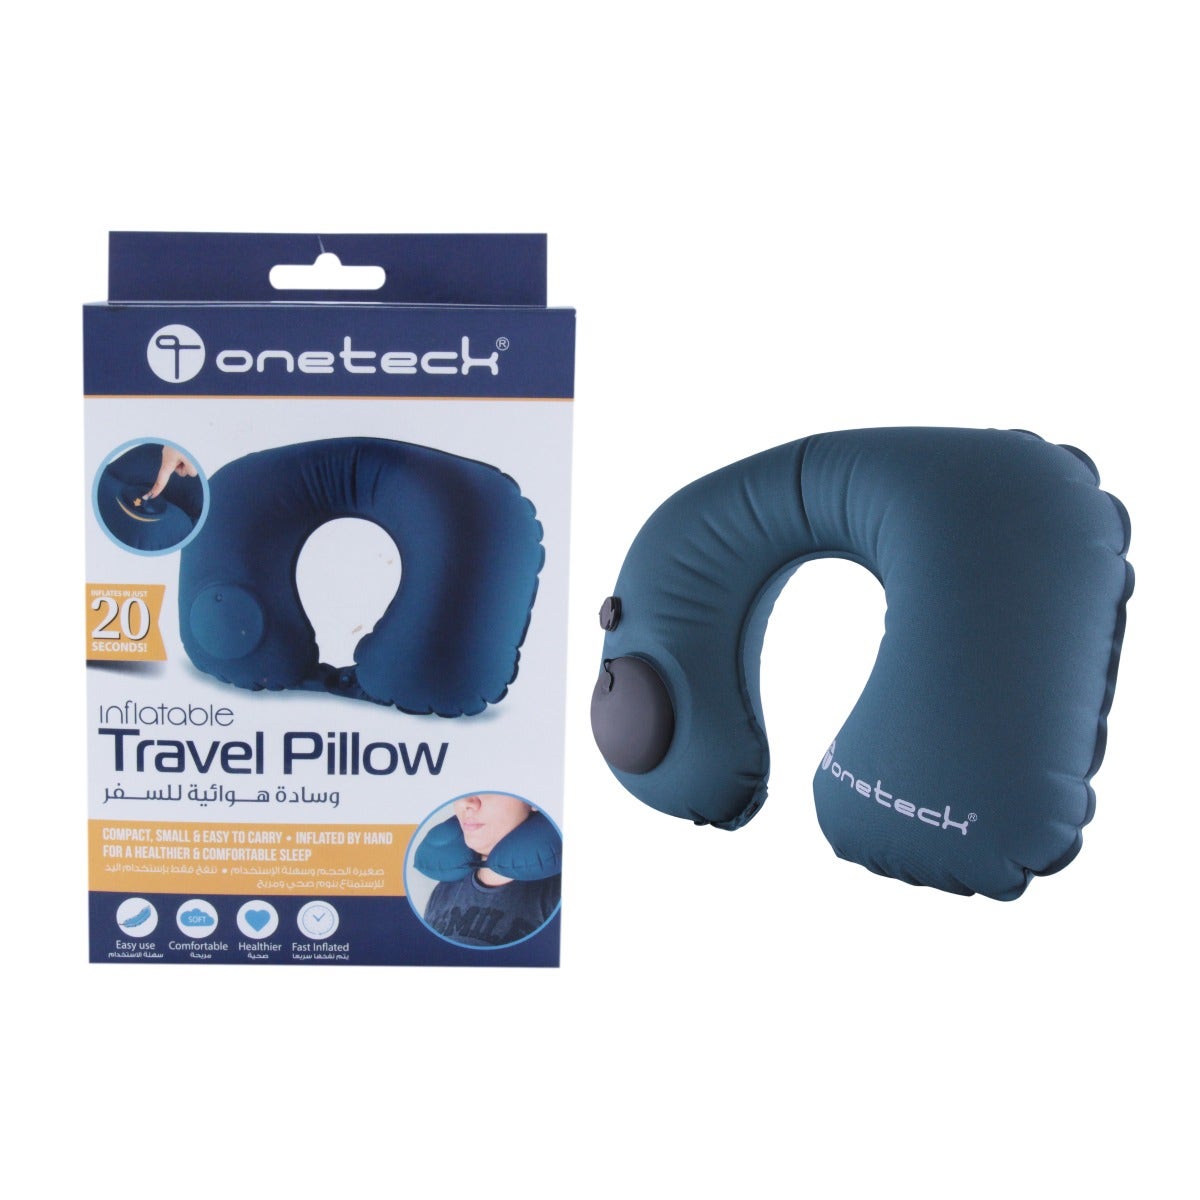 Onetech Travel Pillow - Blue / Grey